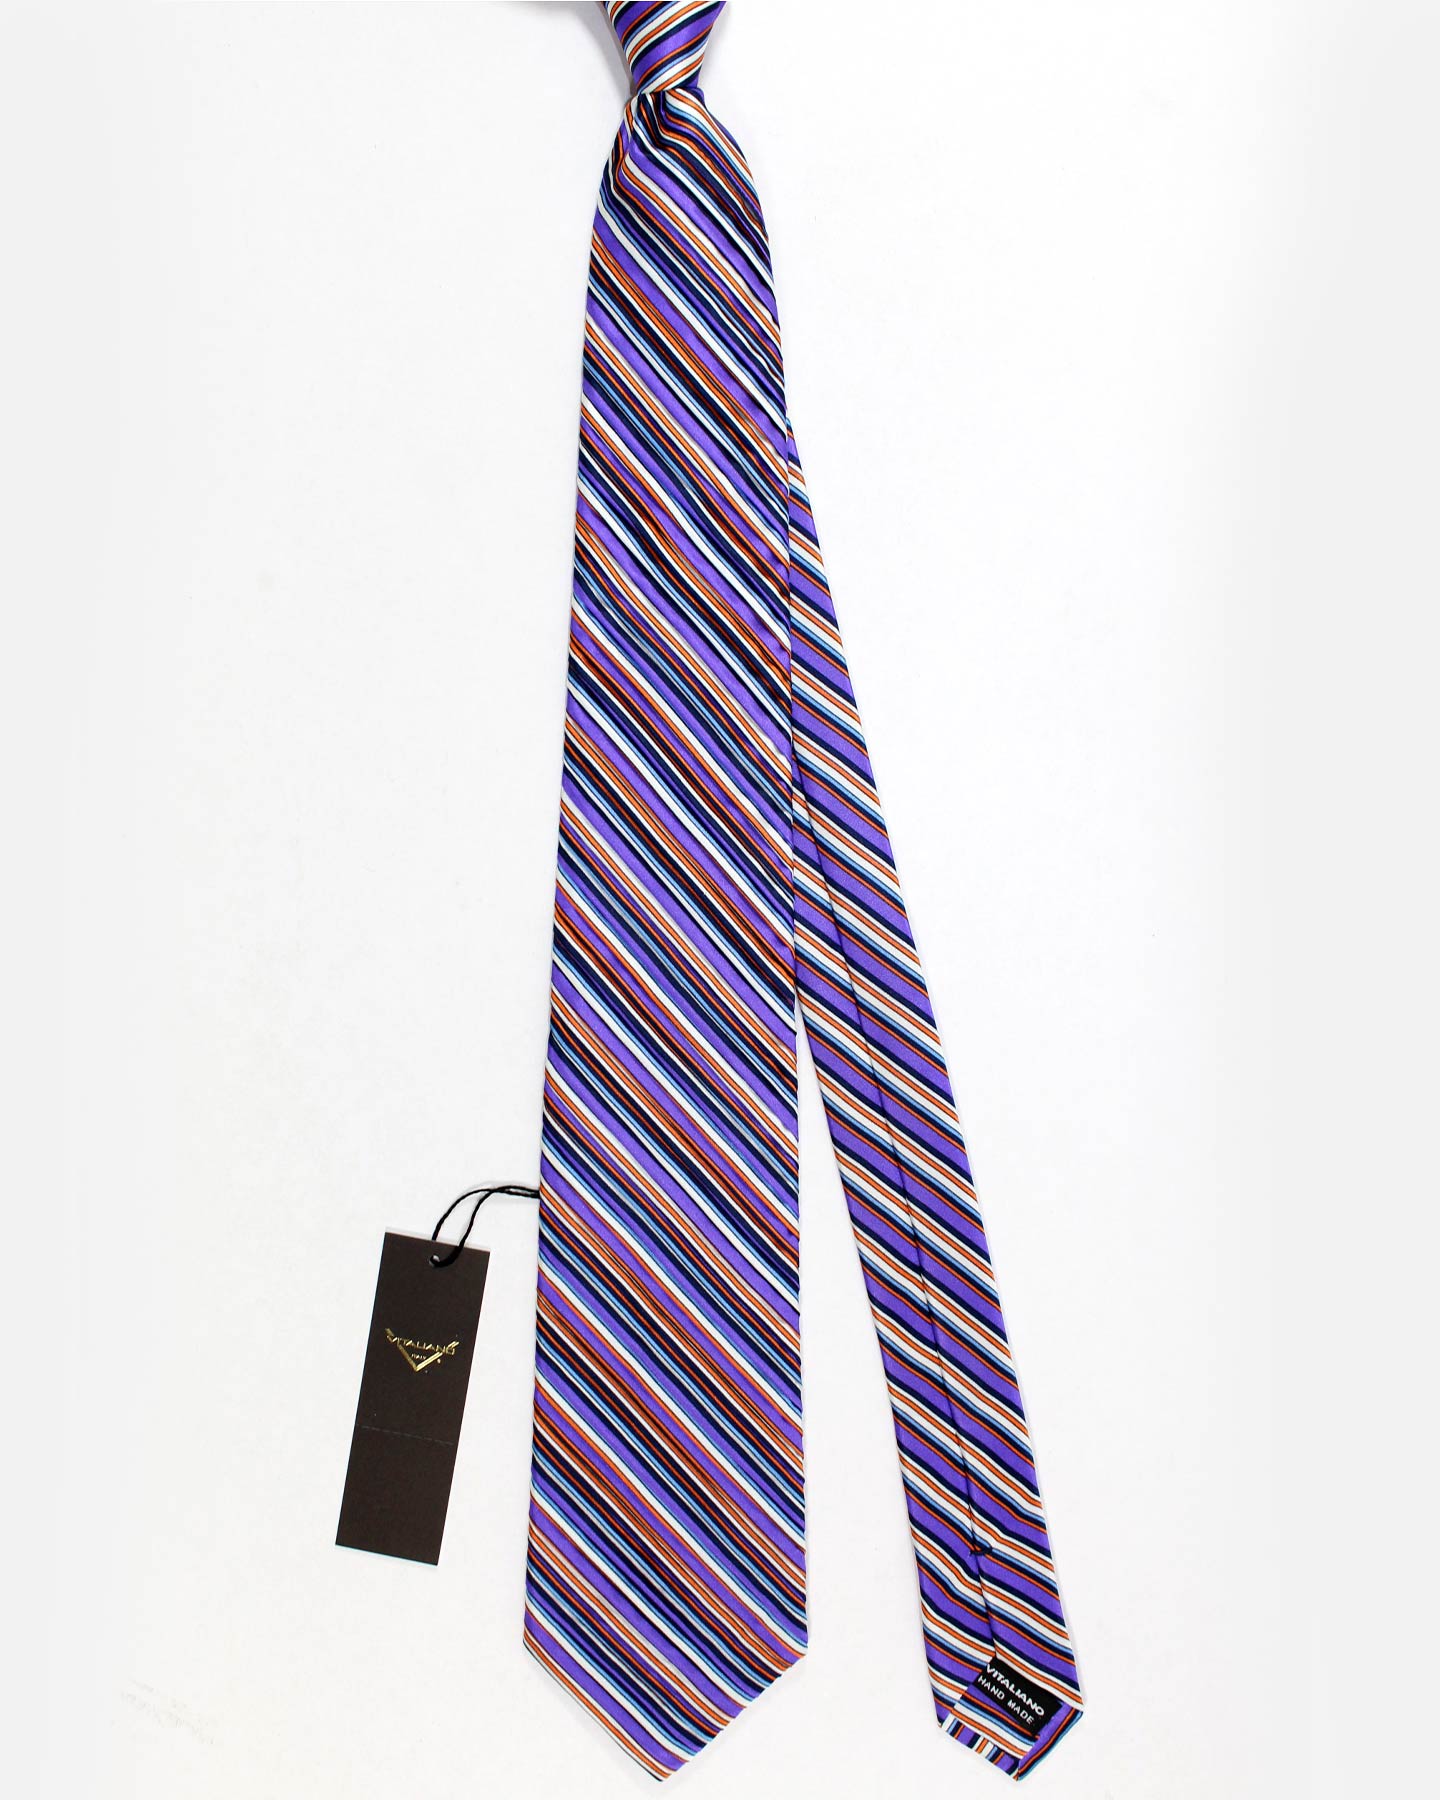 Vitaliano Pancaldi PLEATED SILK Tie Purple White Striped Design